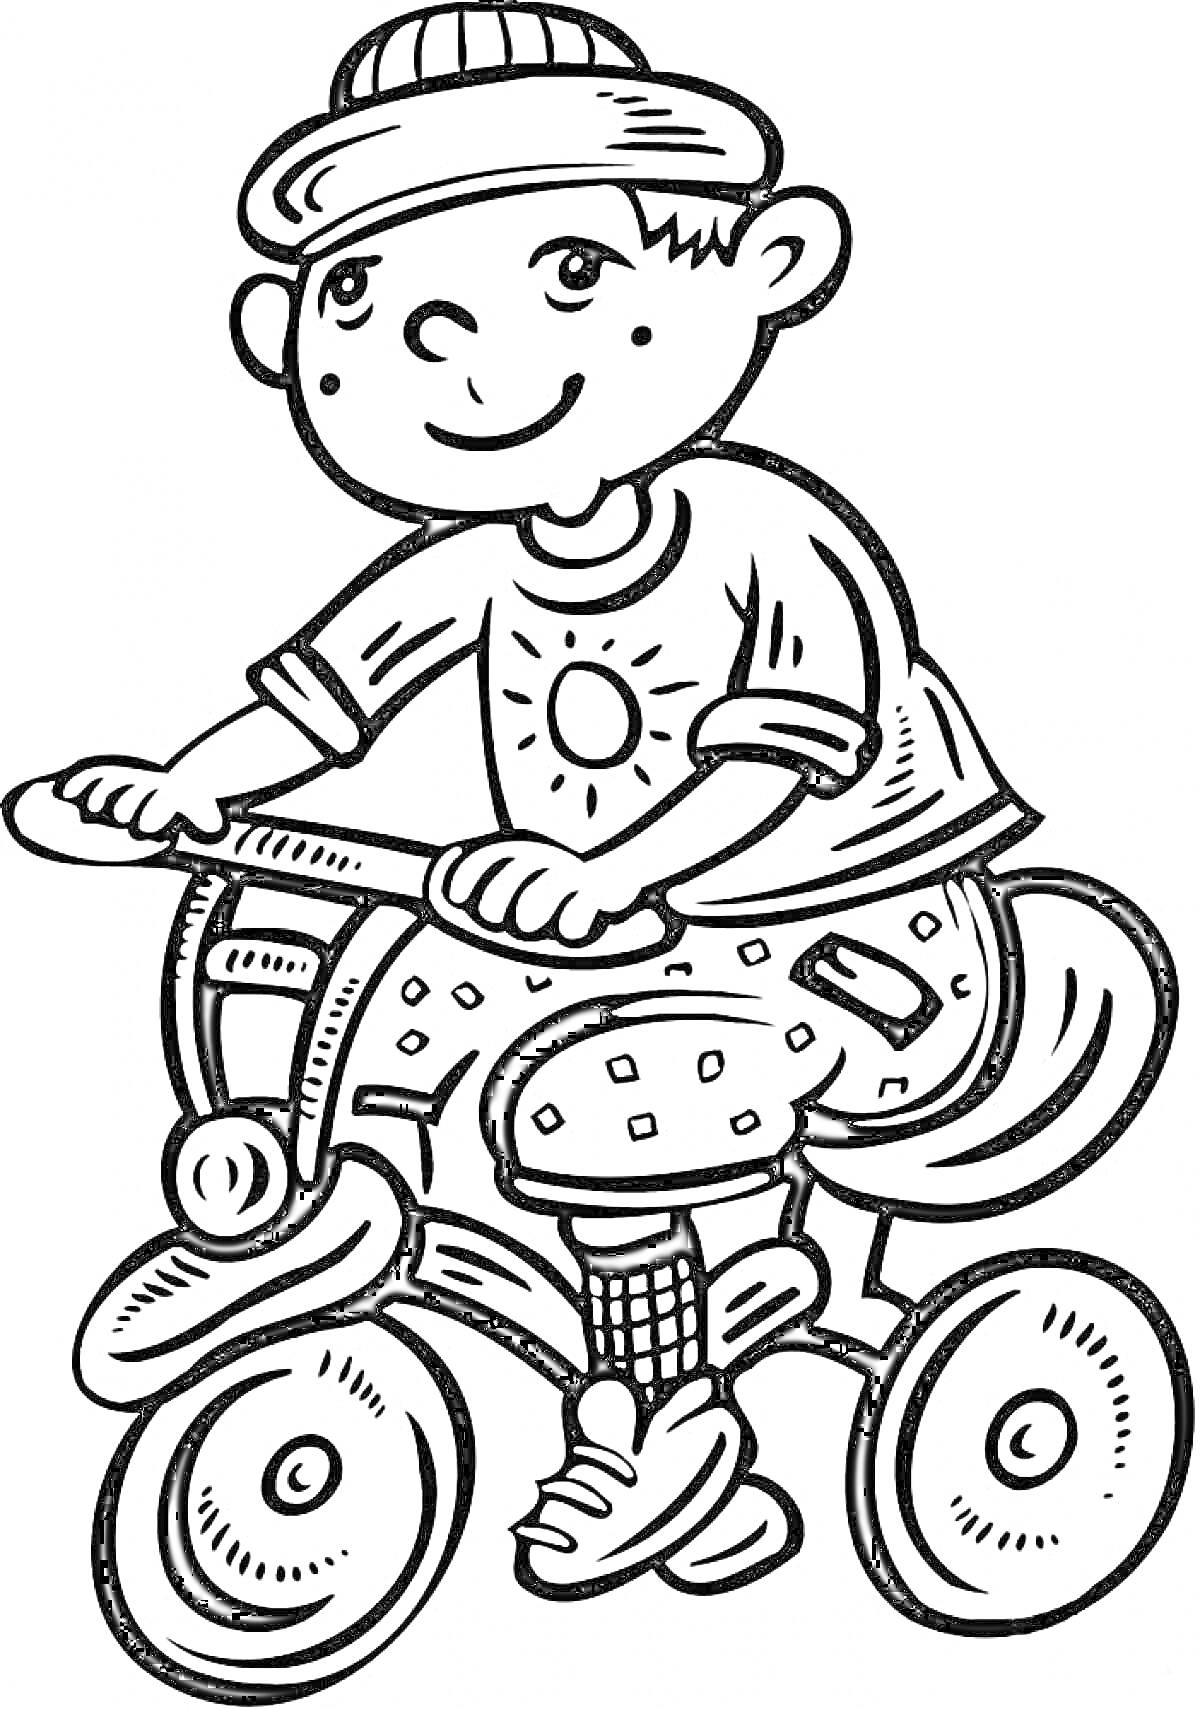 Раскраска Мальчик на трехколесном велосипеде в шапке и футболке с рисунком солнца